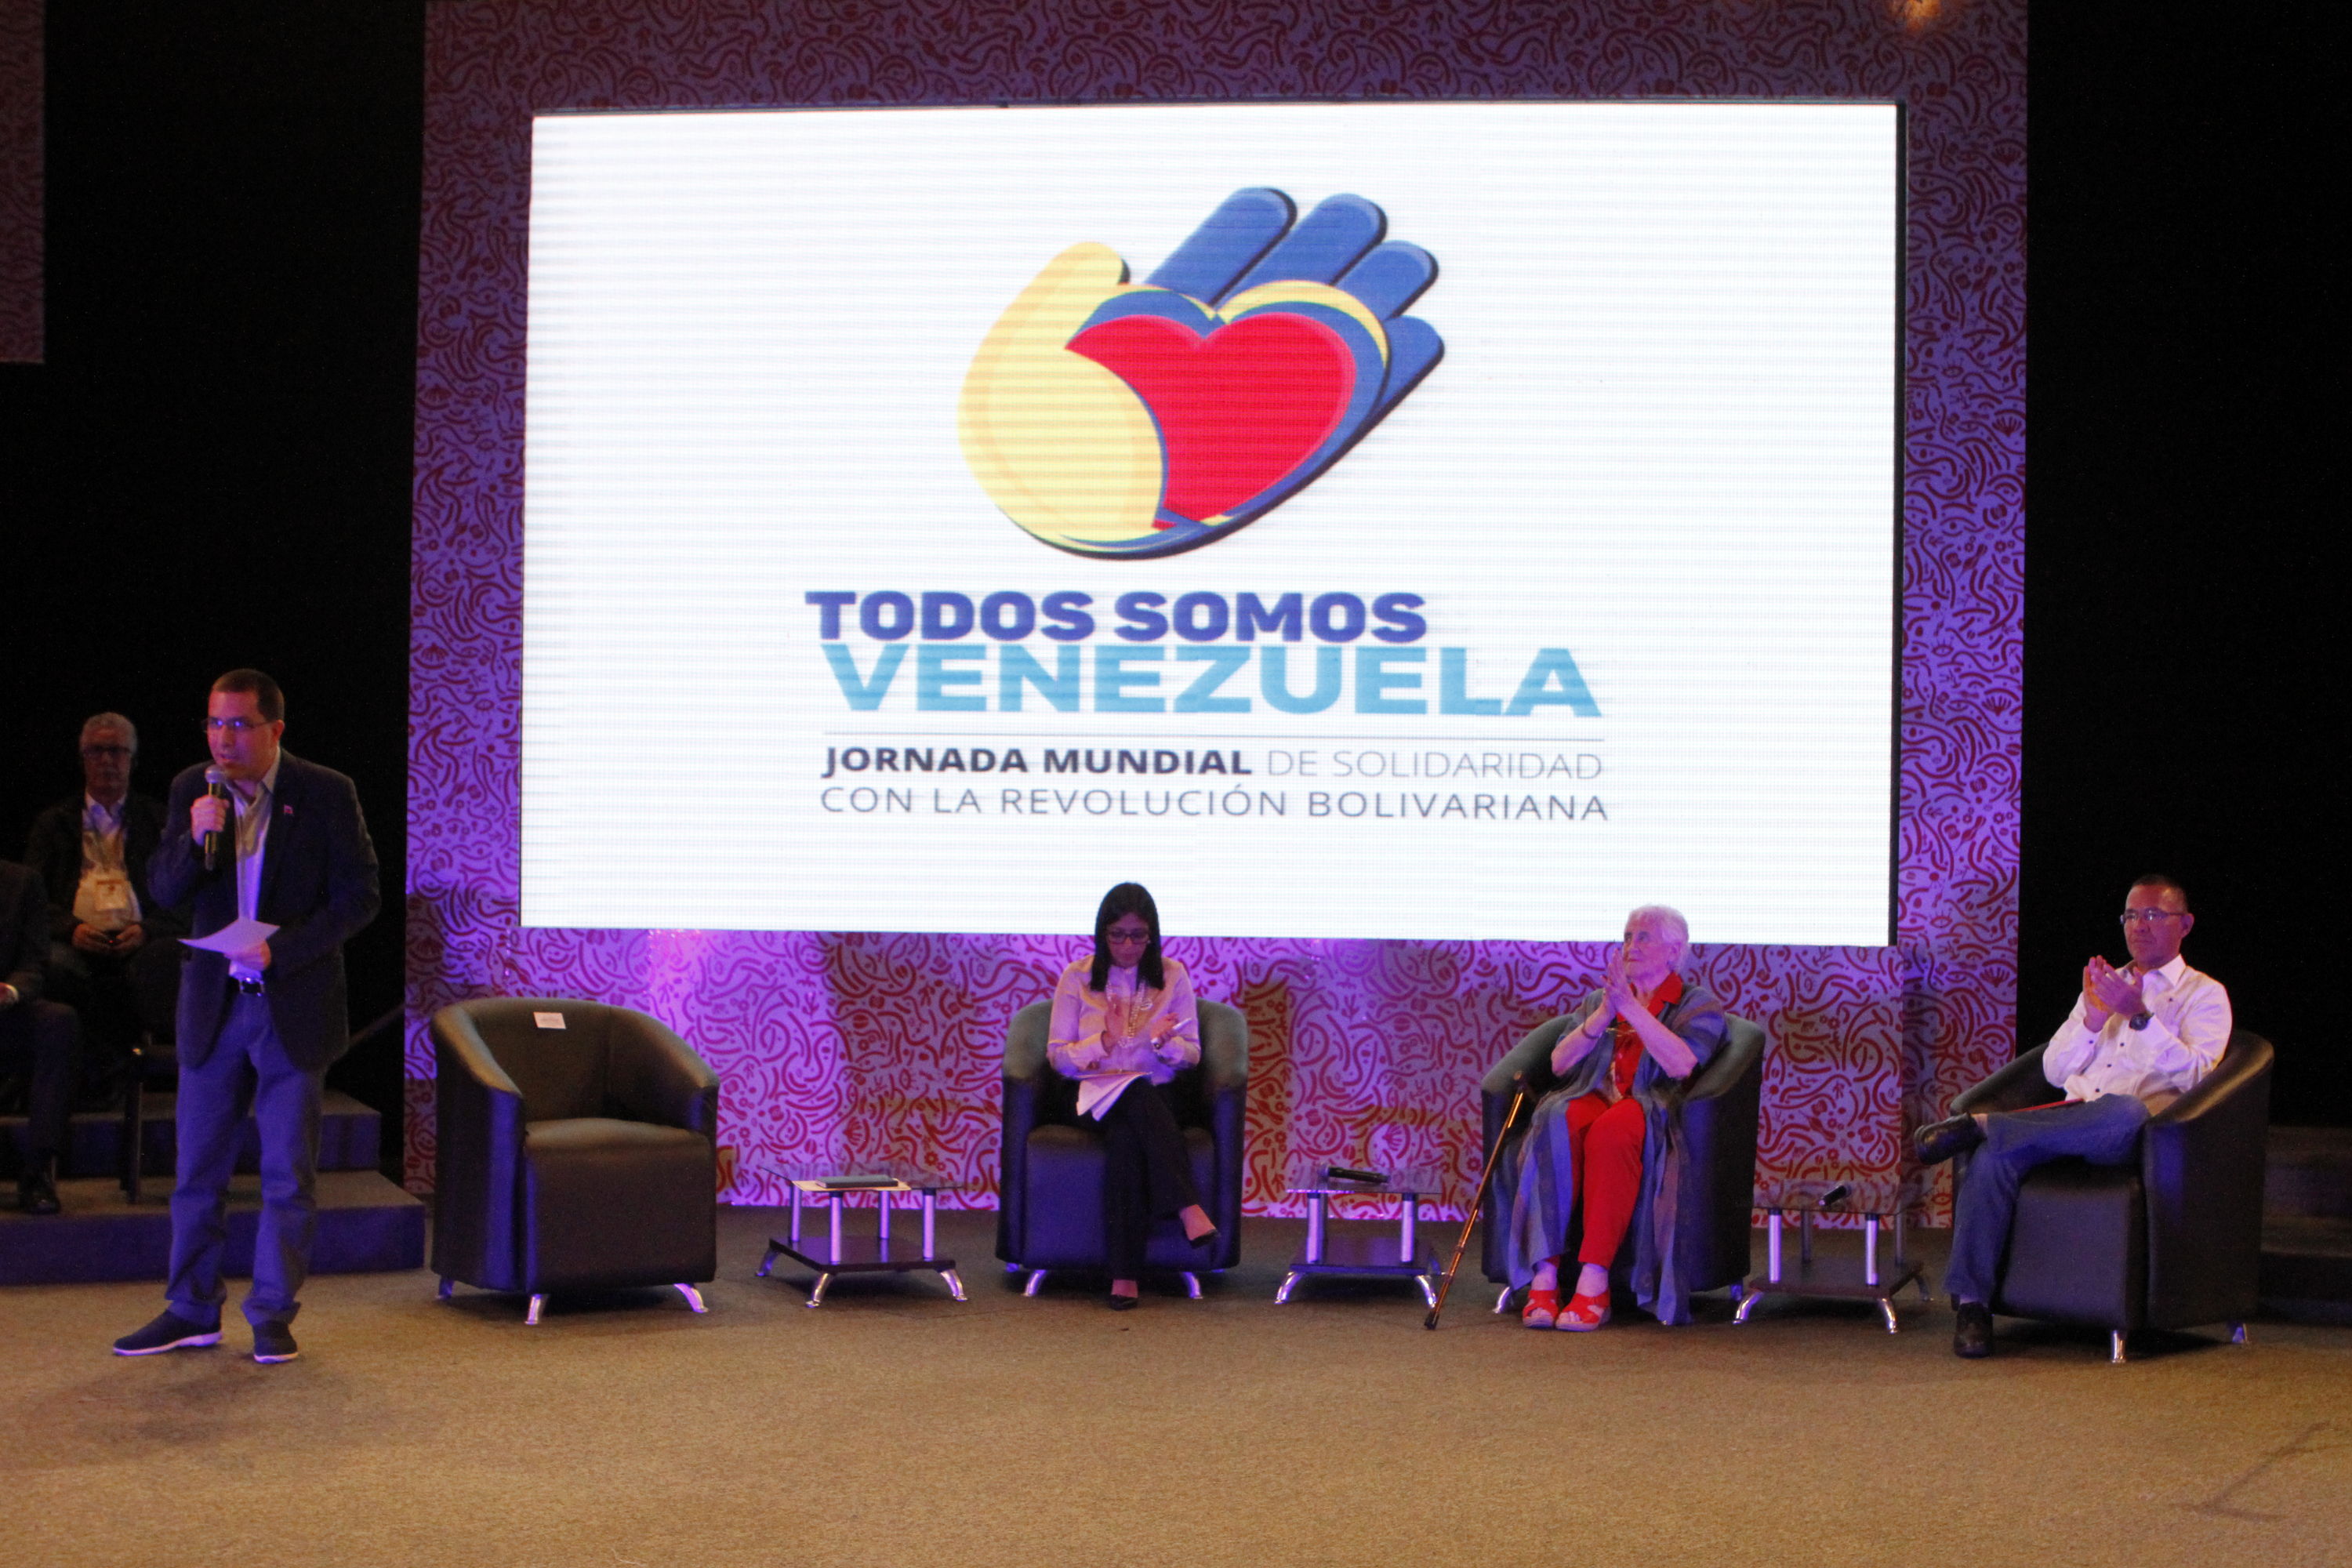 La Jornada de Solidaridad de Venezuela se realizó desde el 5 hasta el 7 de marzo en la capital venezolana, Caracas.